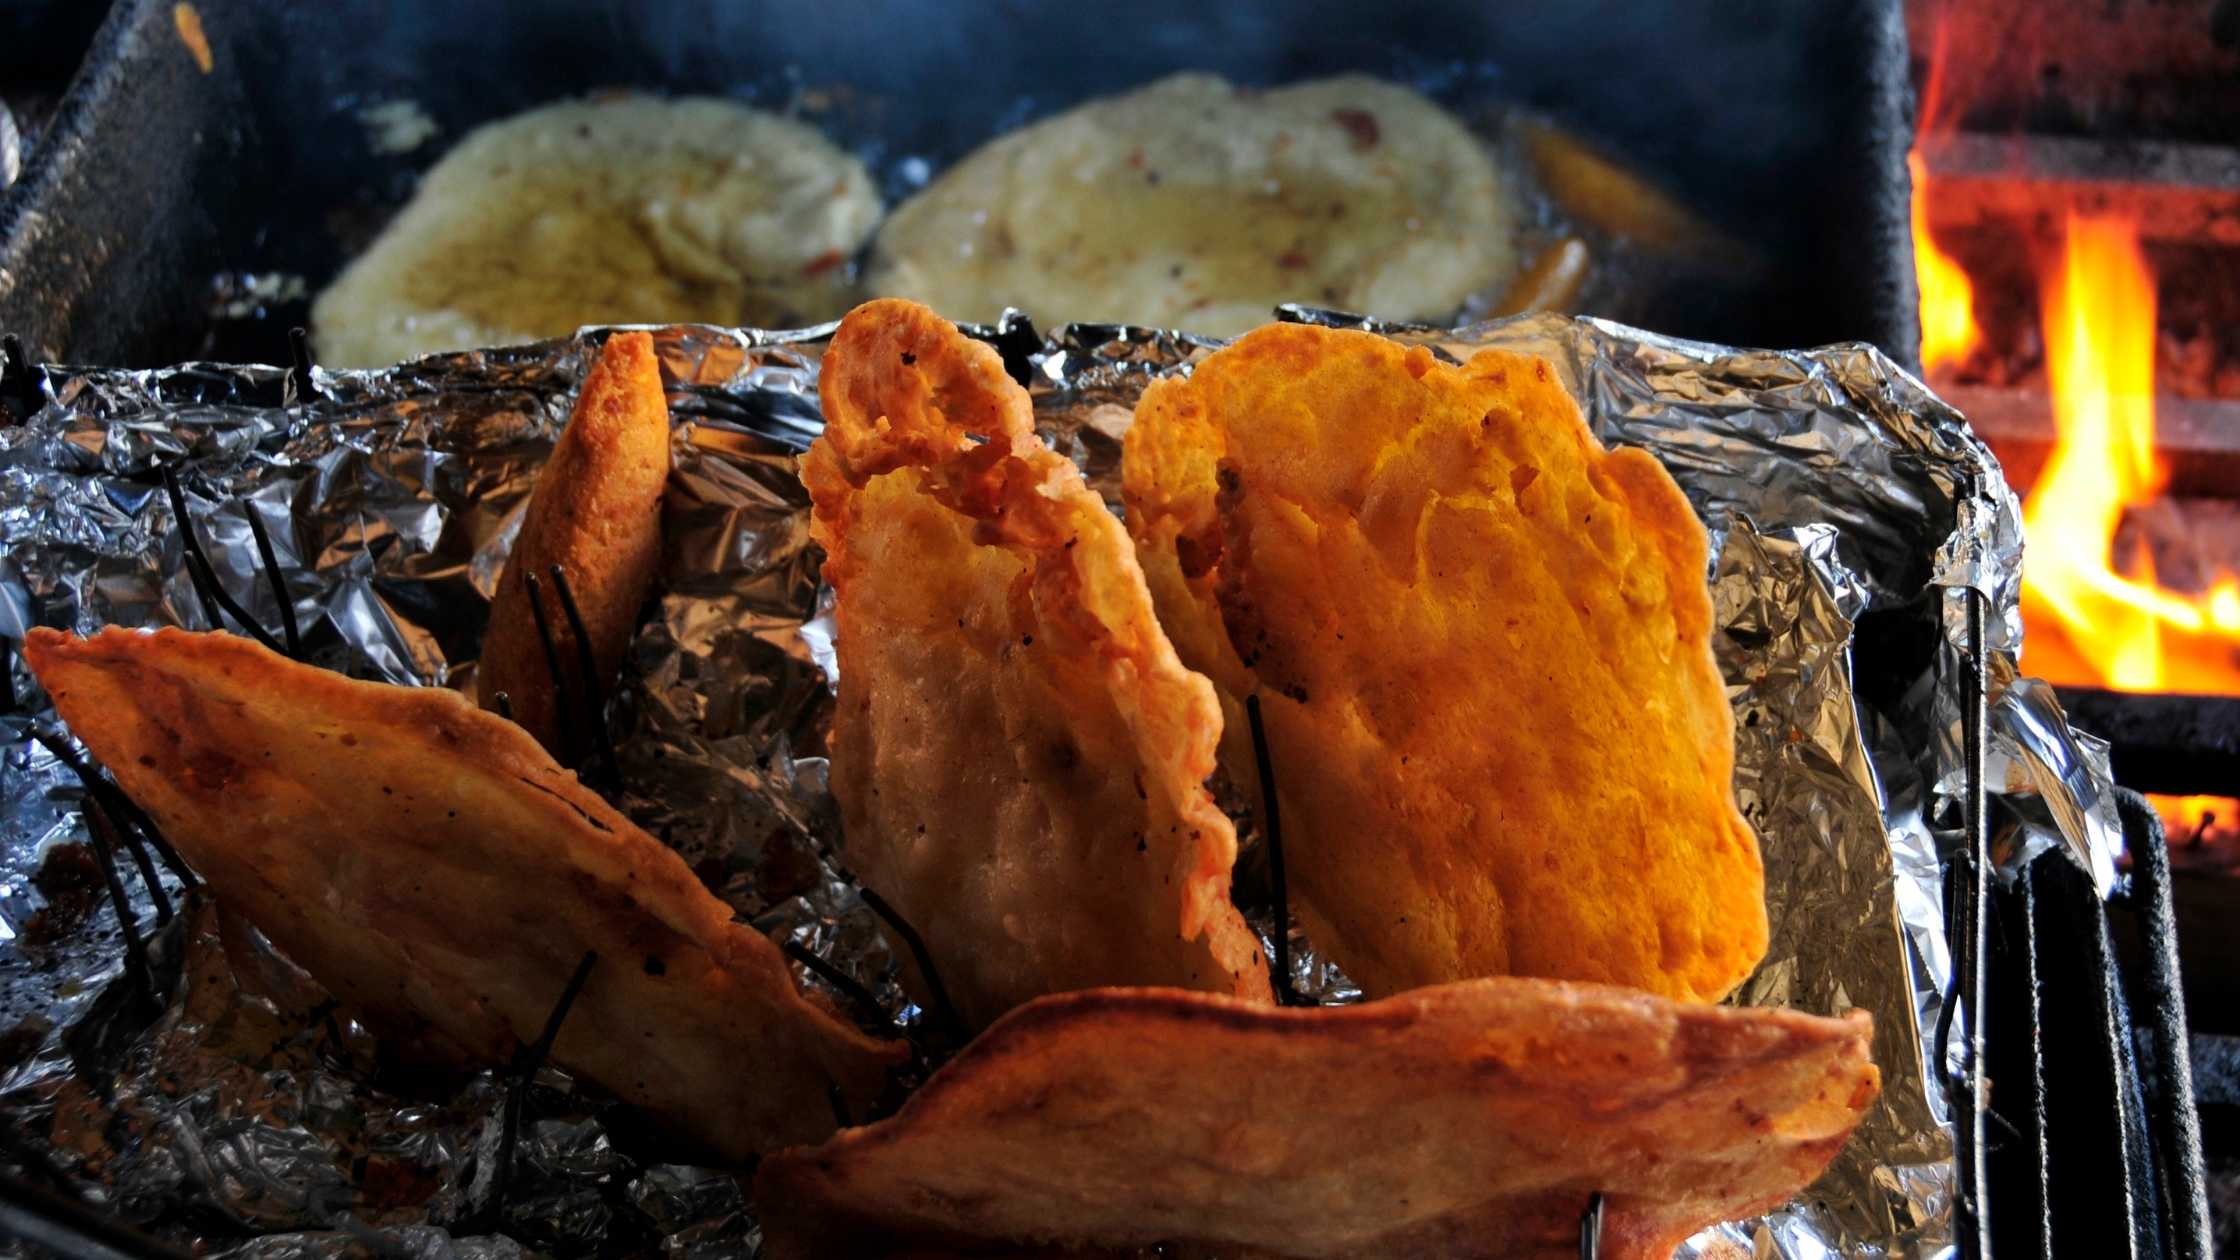 Bacalaitos puerto rican fried dish